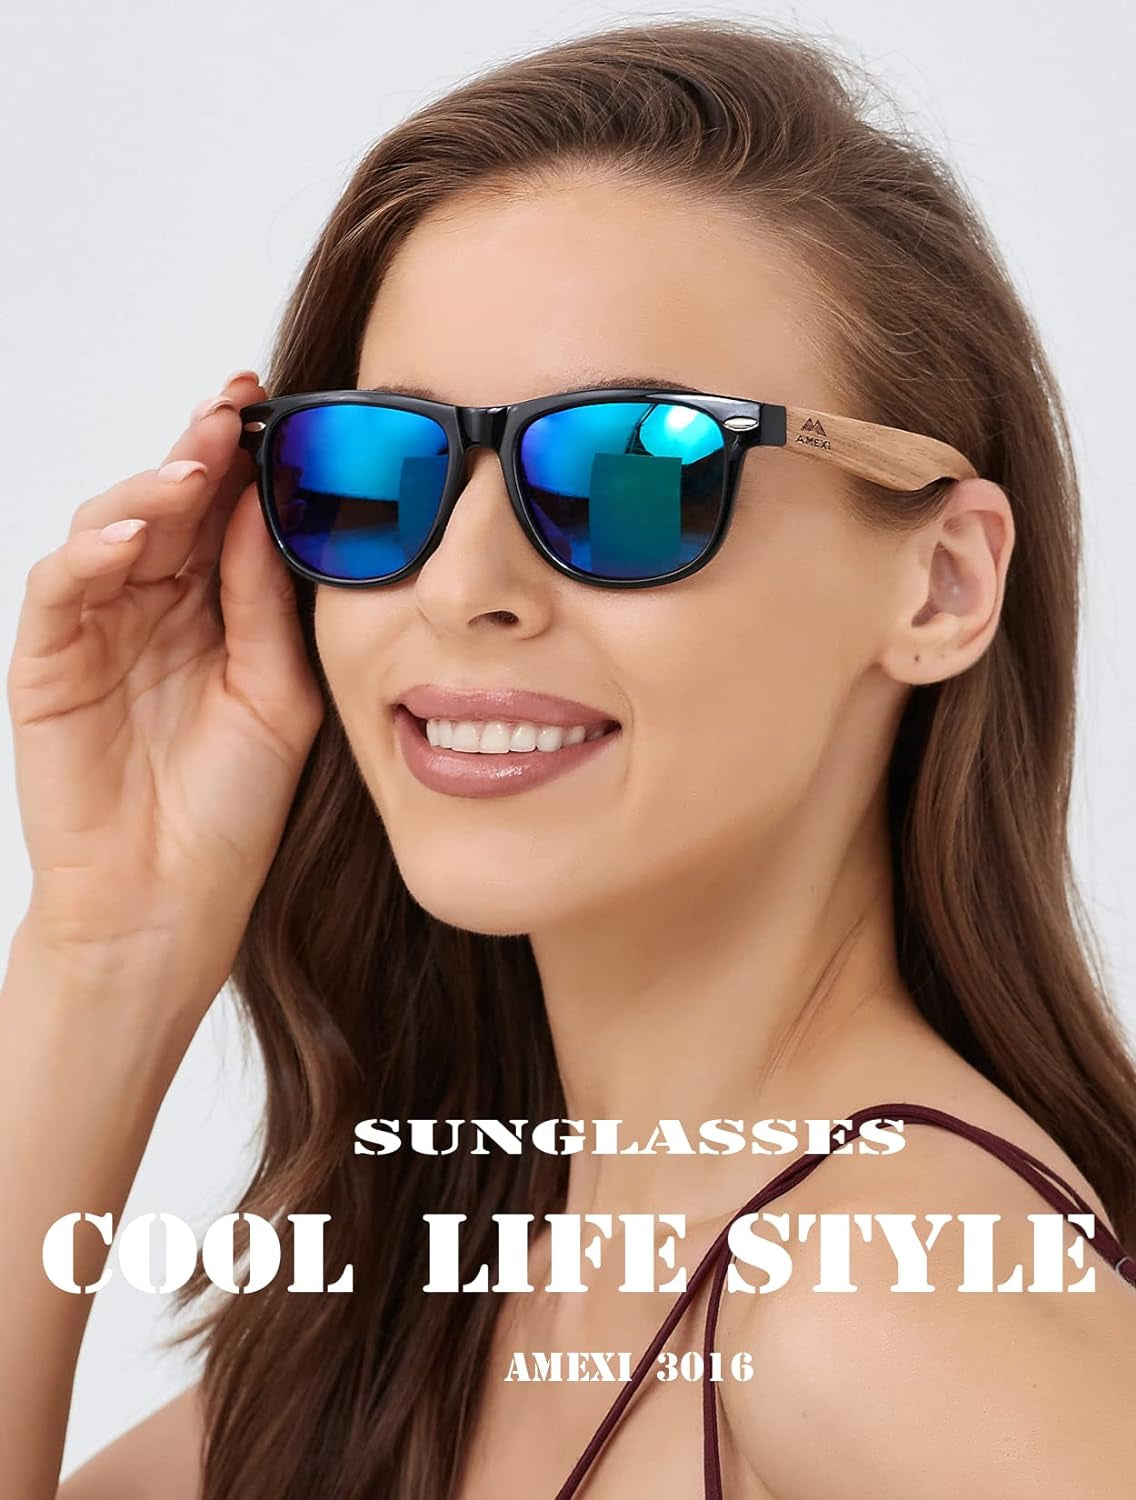 Holz Sonnenbrillen Polarisierte Sonnenbrille,Herren Damen Polarisierte Holz Brille,Polarisierende Brillengläser Mit Uv400-Schutz